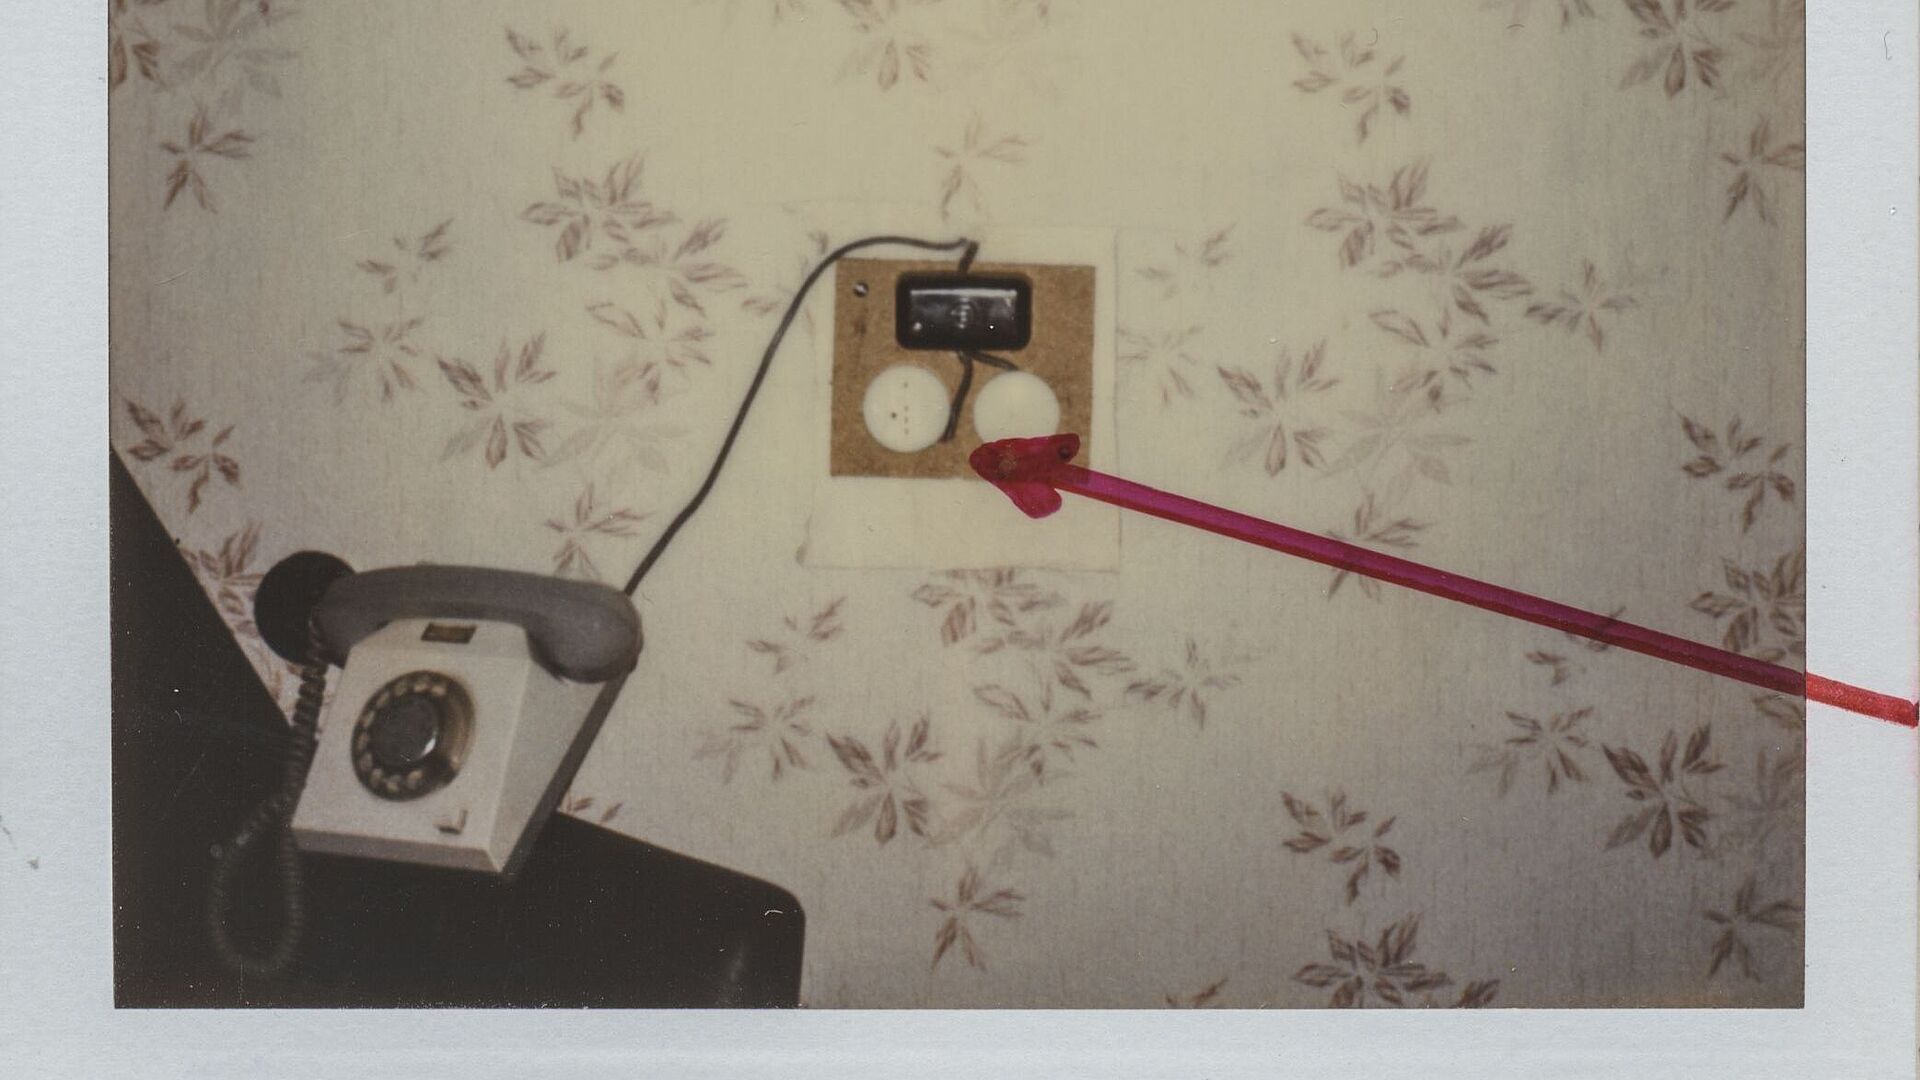 Das Polaroidfoto zeigt eine tapezierte Wand vor der ein Telefon steht. Neben dem Telefon ist eine elektronische Apparatur zu sehen. Diese wurde auf dem Polaroidfoto mit einem roten Pfeil markiert.